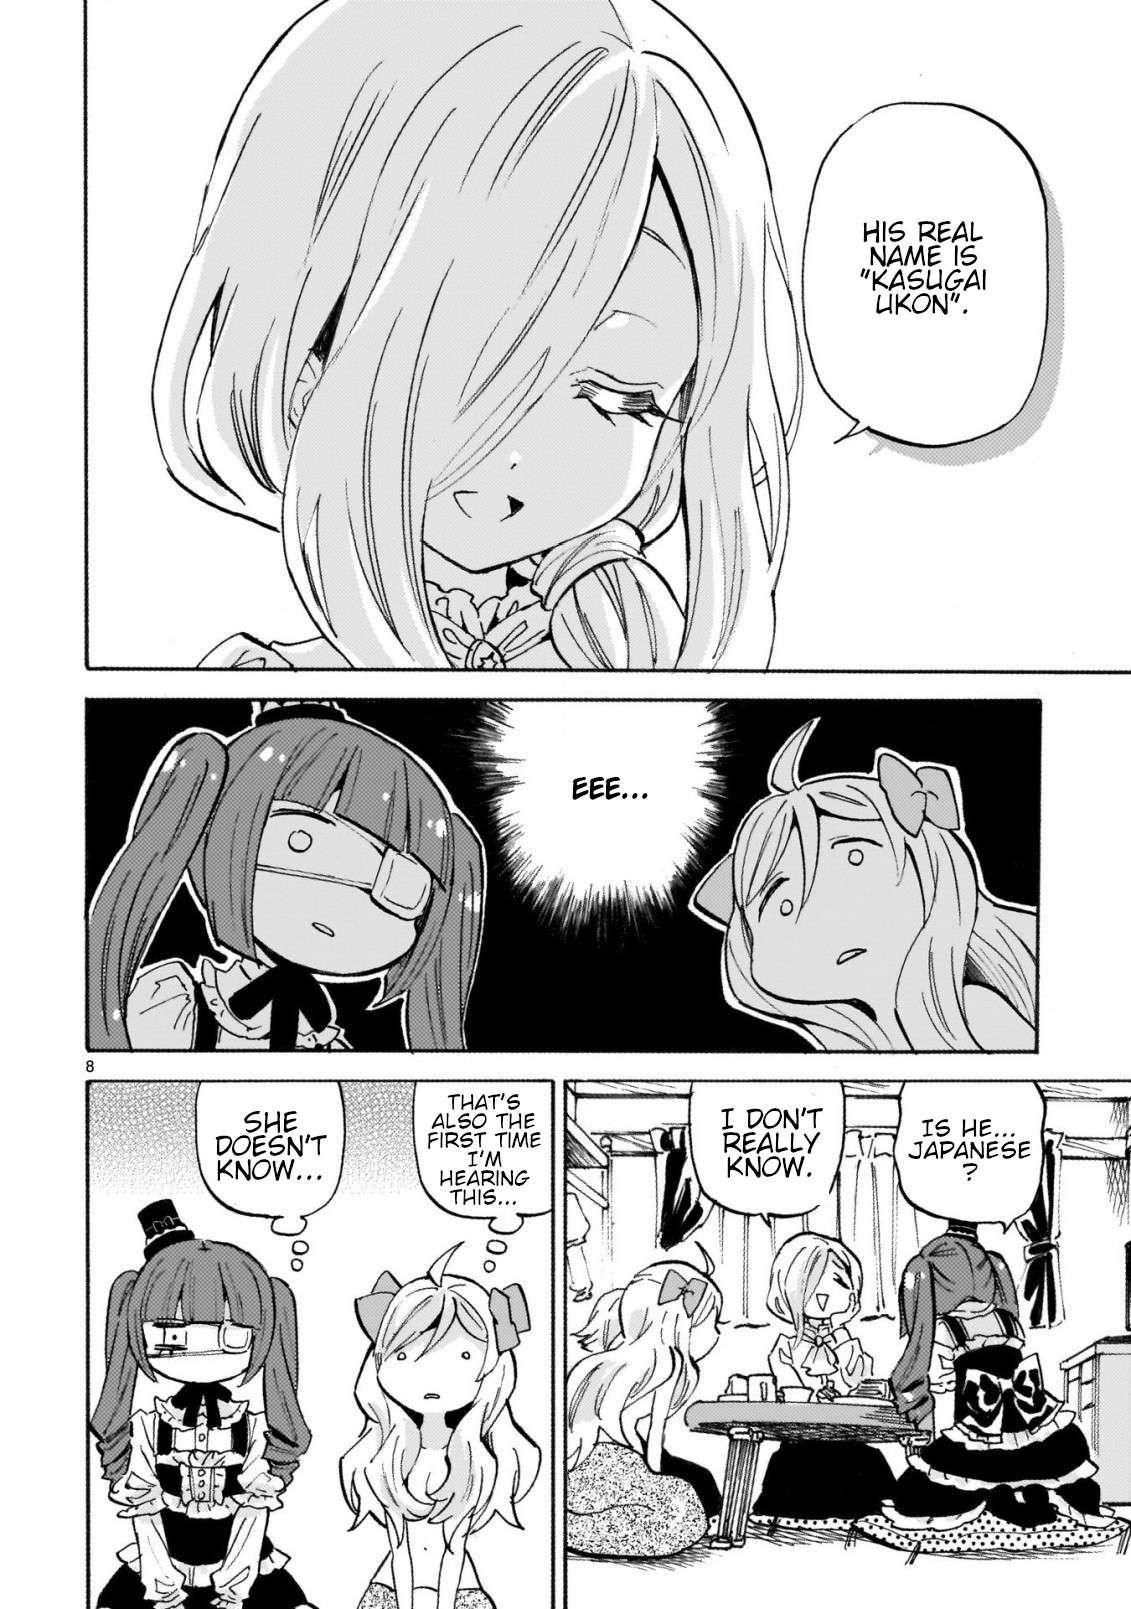 Jashin-chan Dropkick chapter 247 page 8